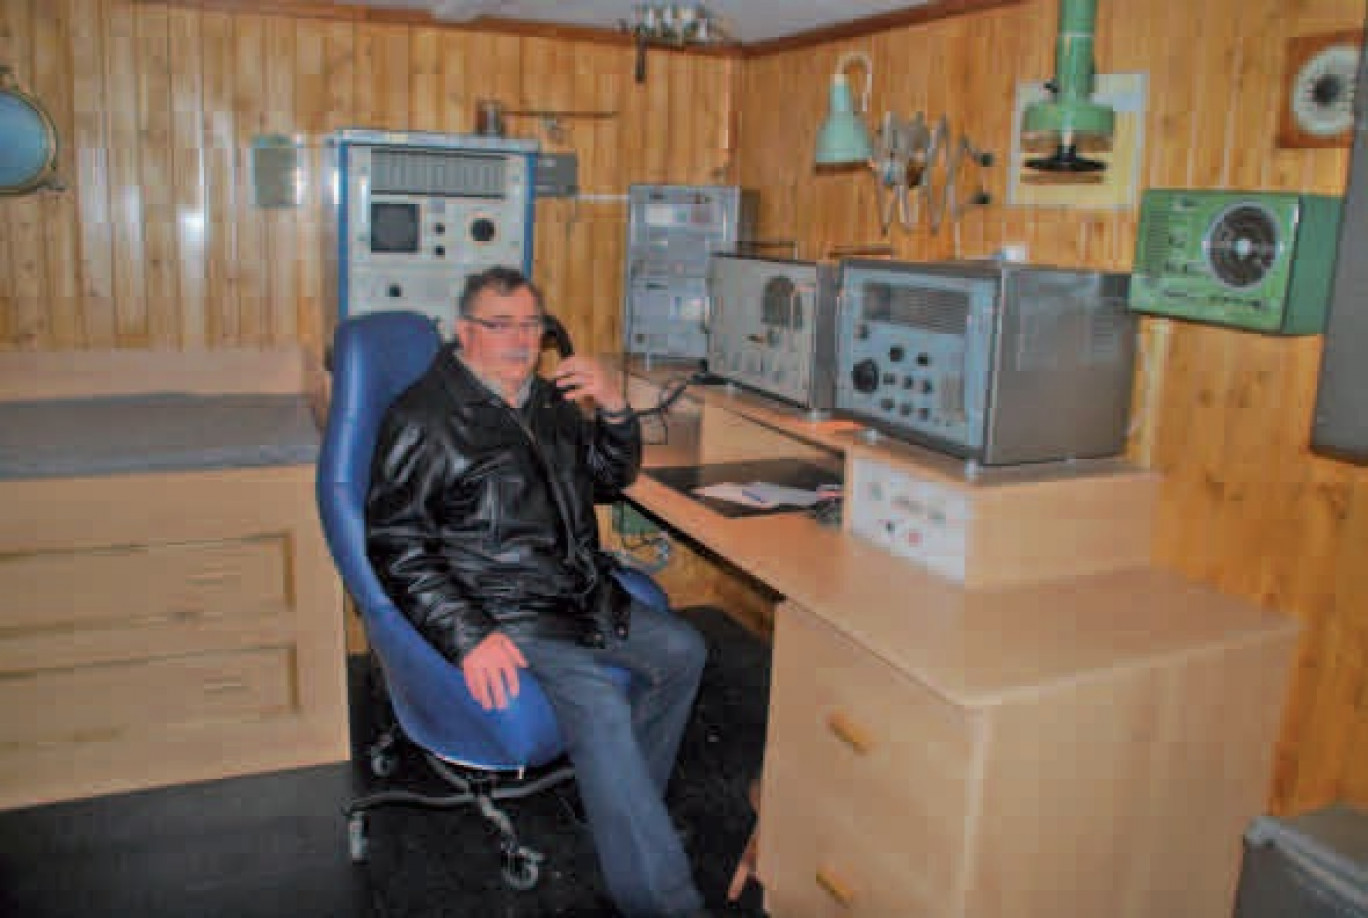 La cabine reconstituée d’un officier radio à bord d’un chalutier classique, à taille réelle.